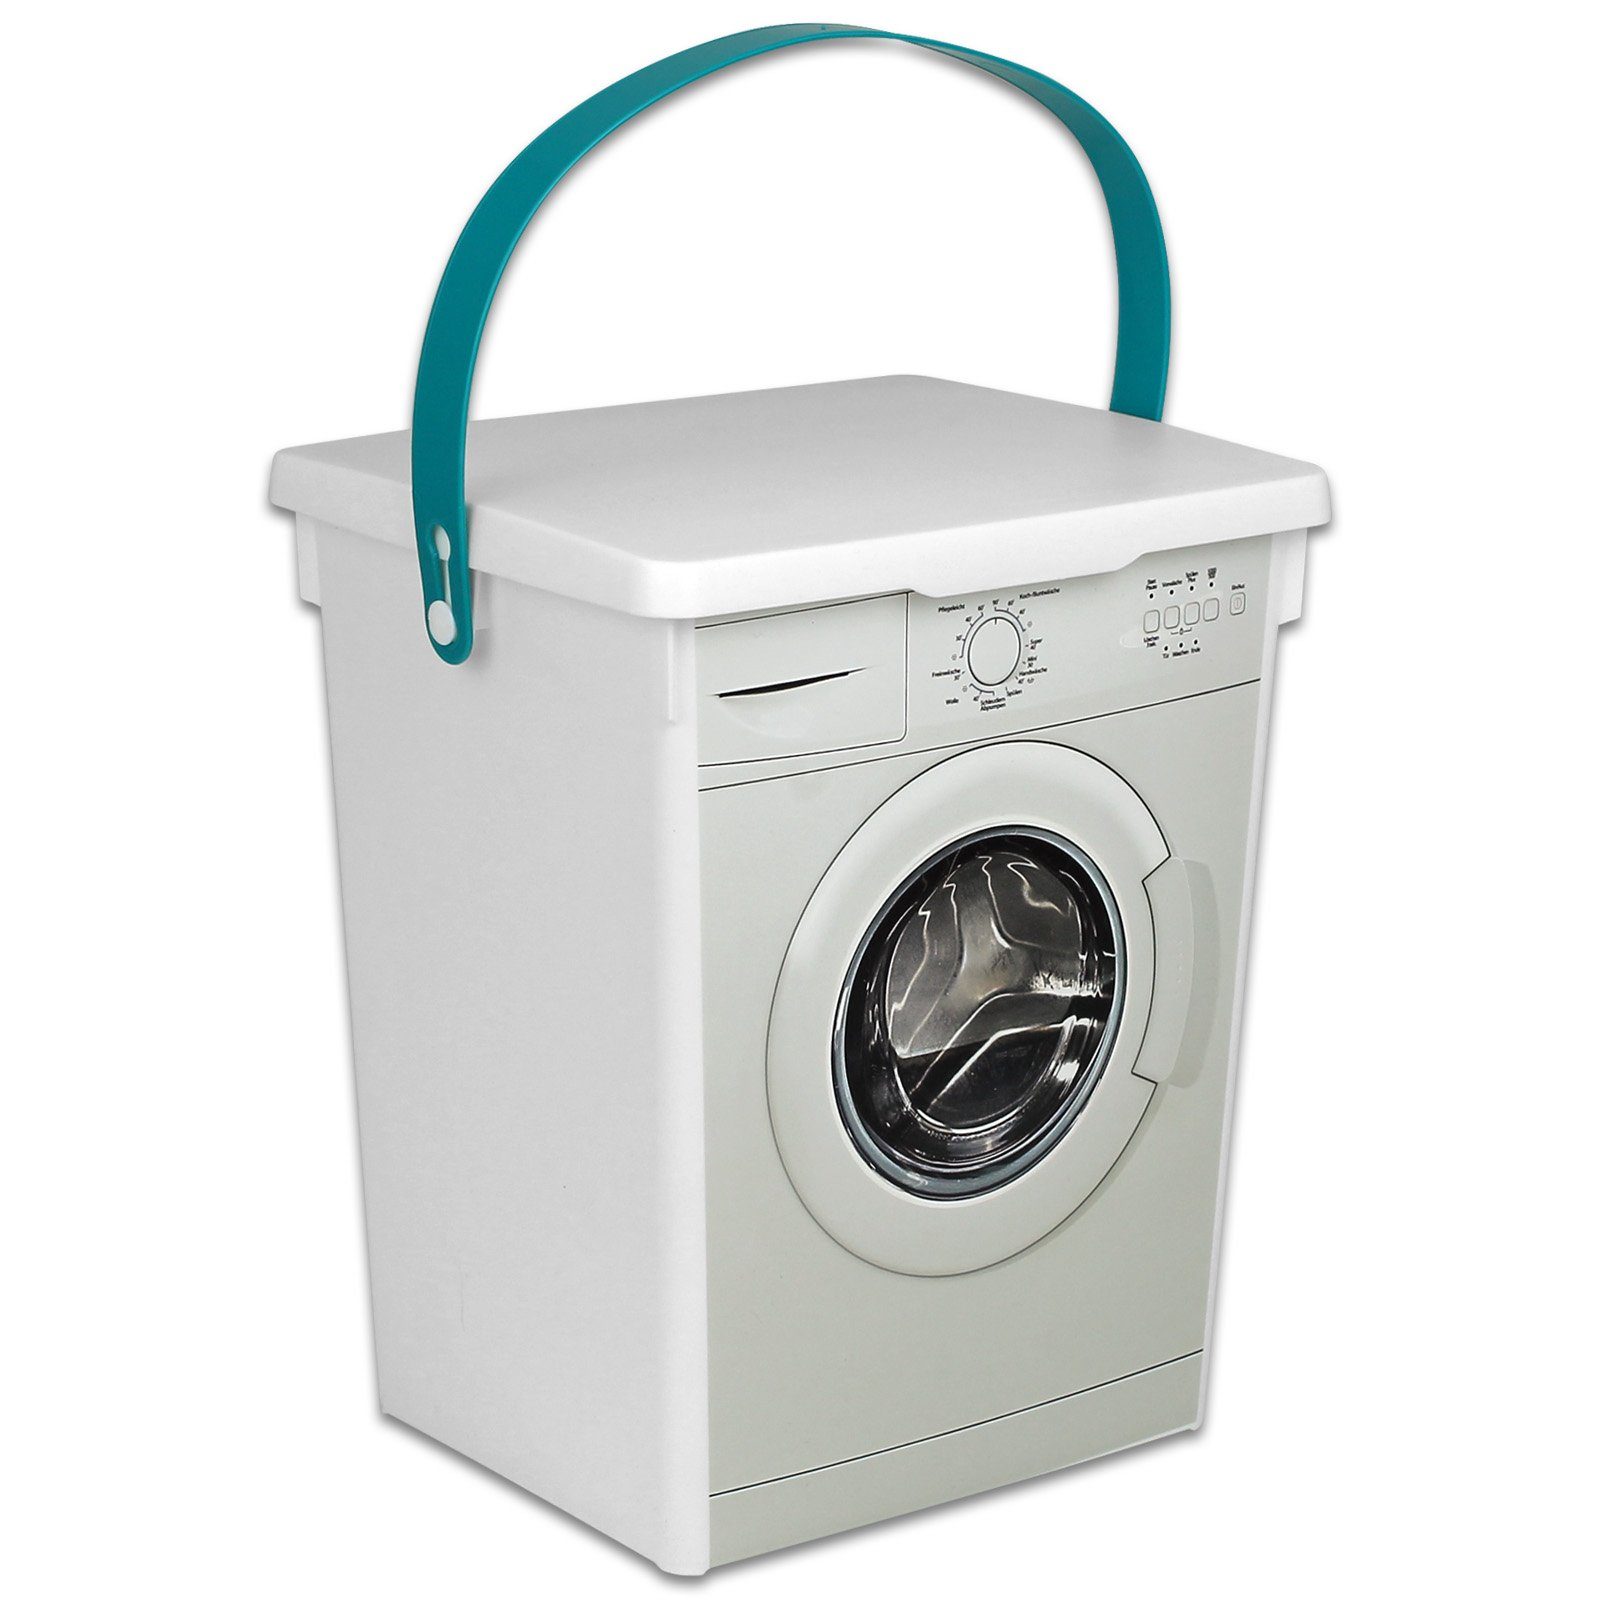 5L Koopman Aufbewahrung Aufbewahrungsbox Box Waschmitteldose Waschpulver Waschmittelbox Wäscheklammerbox Waschpulverbehälter Kunststoff,